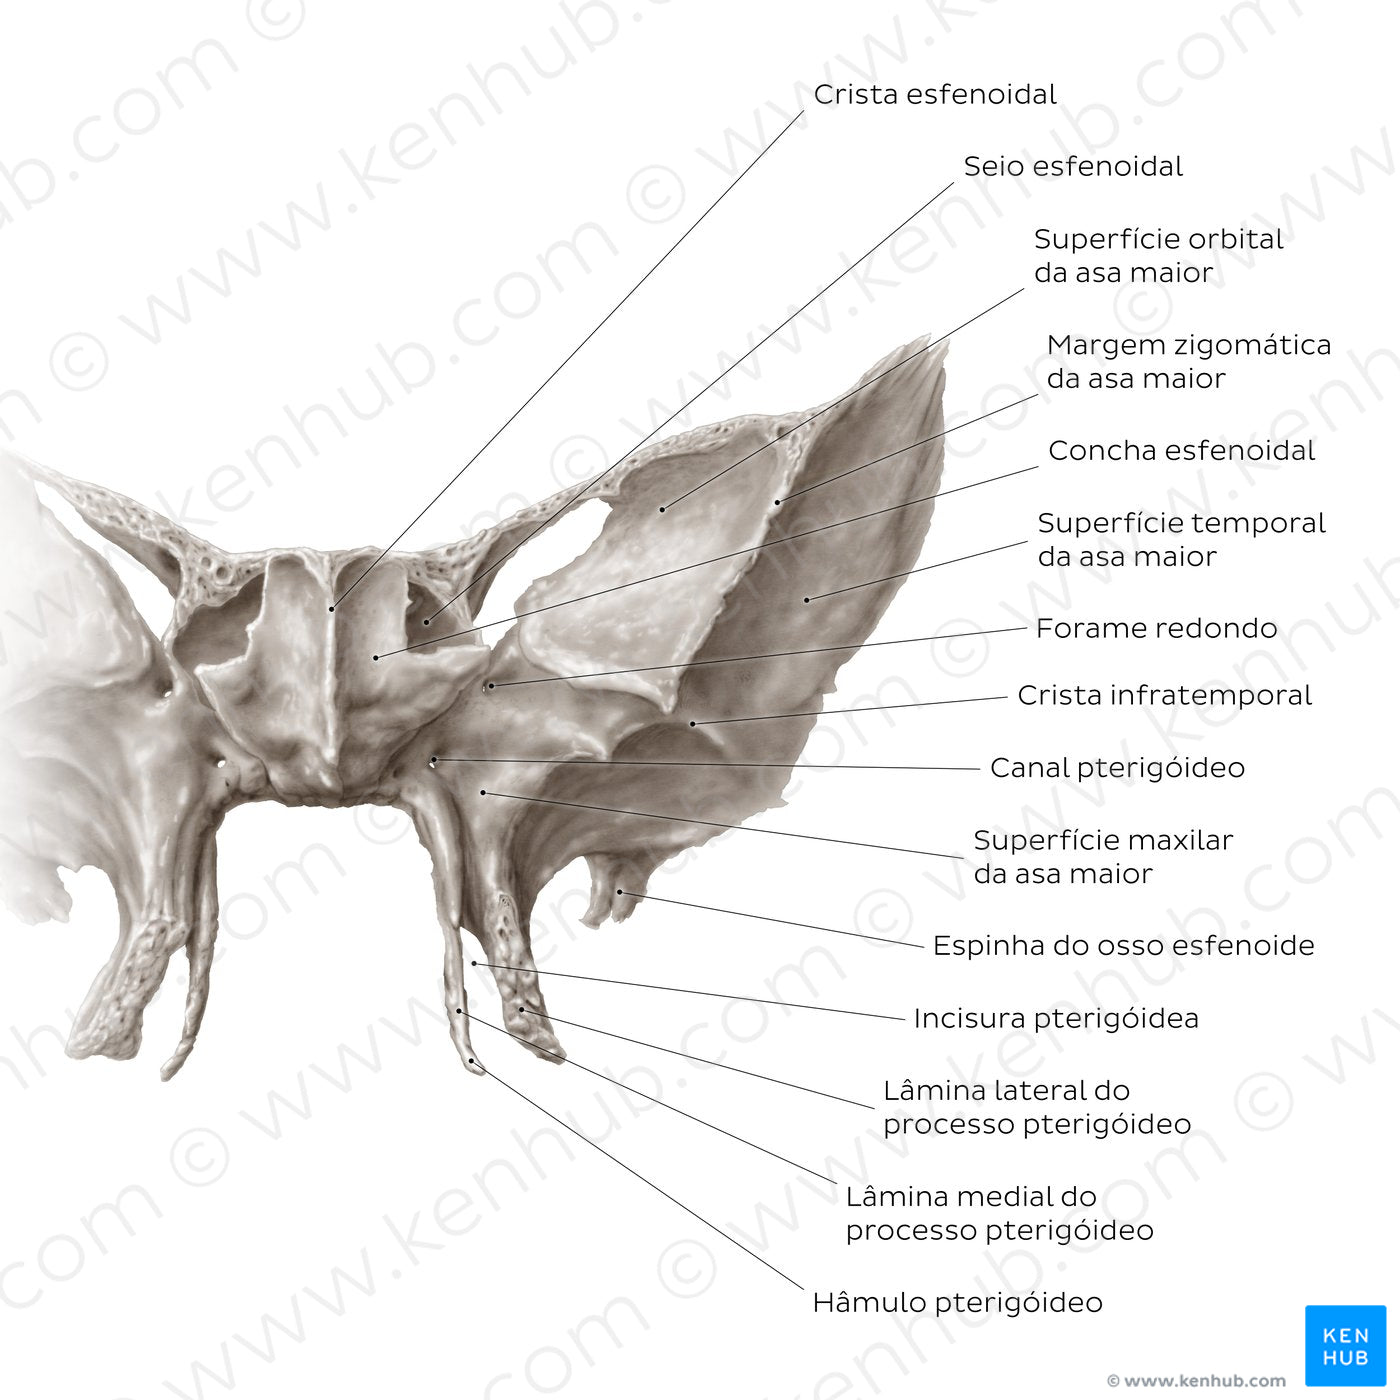 Sphenoid bone (anterior view) (Portuguese)